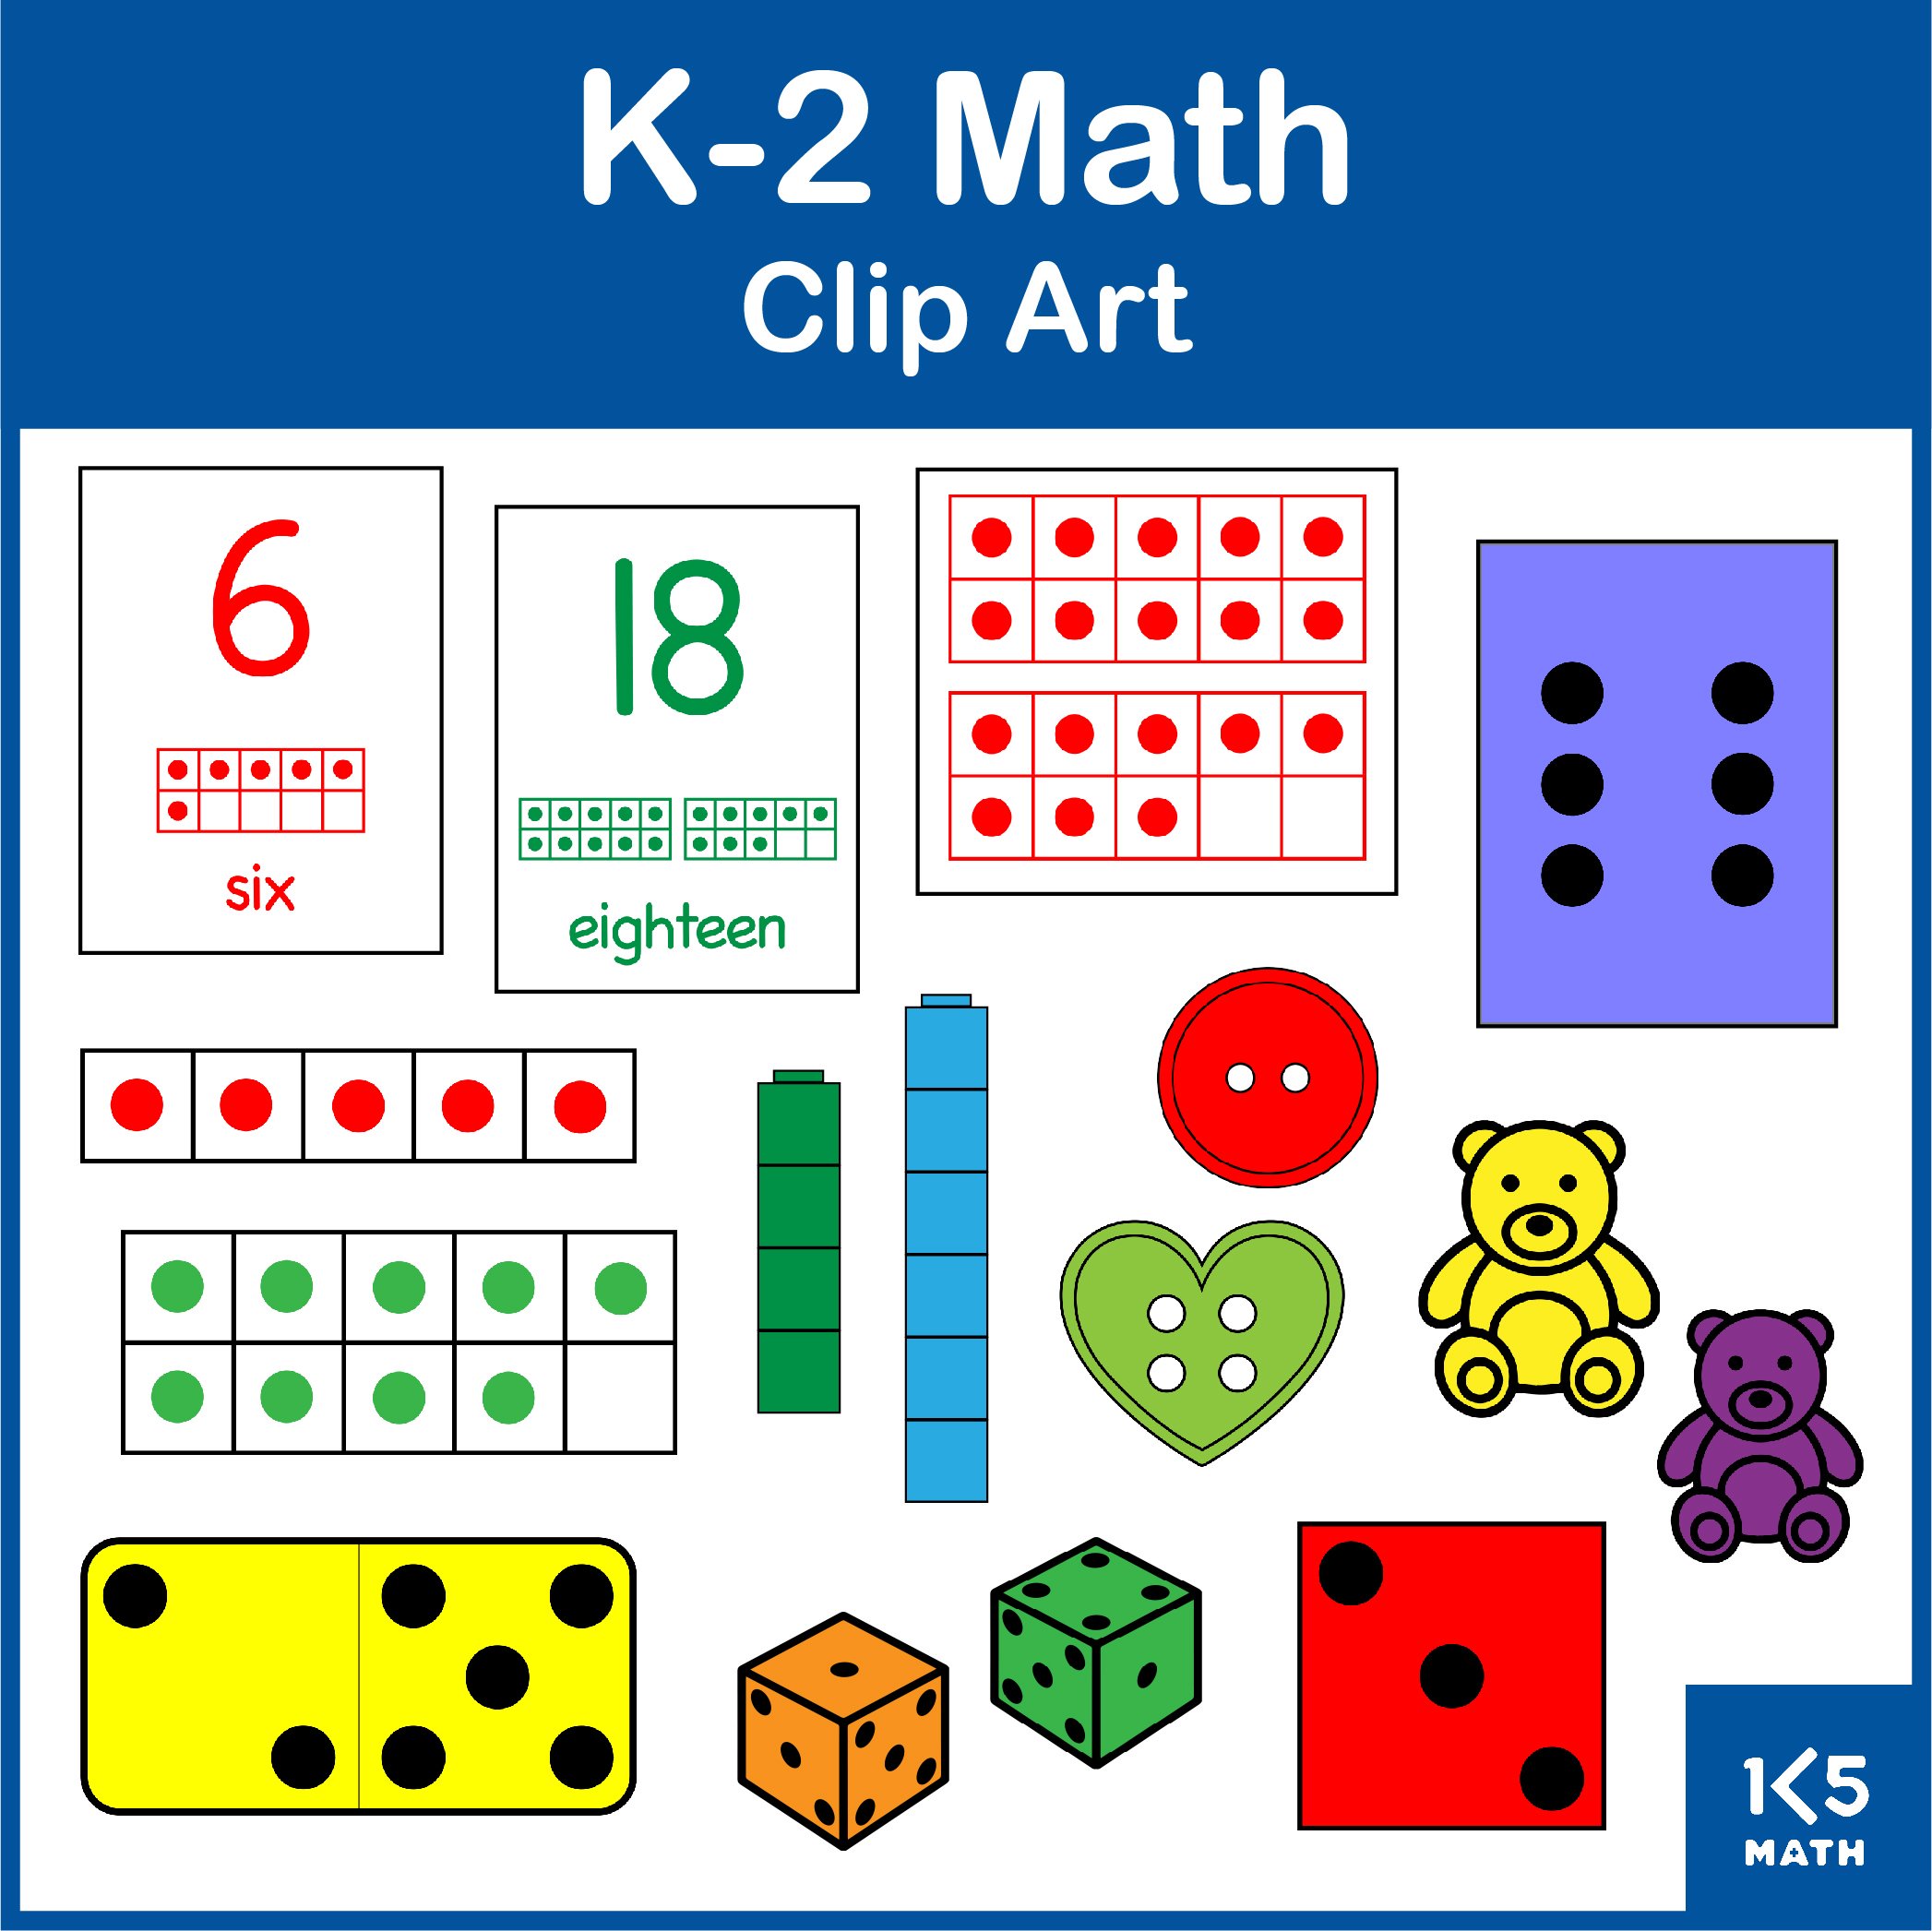 K-2 Math Clip Art